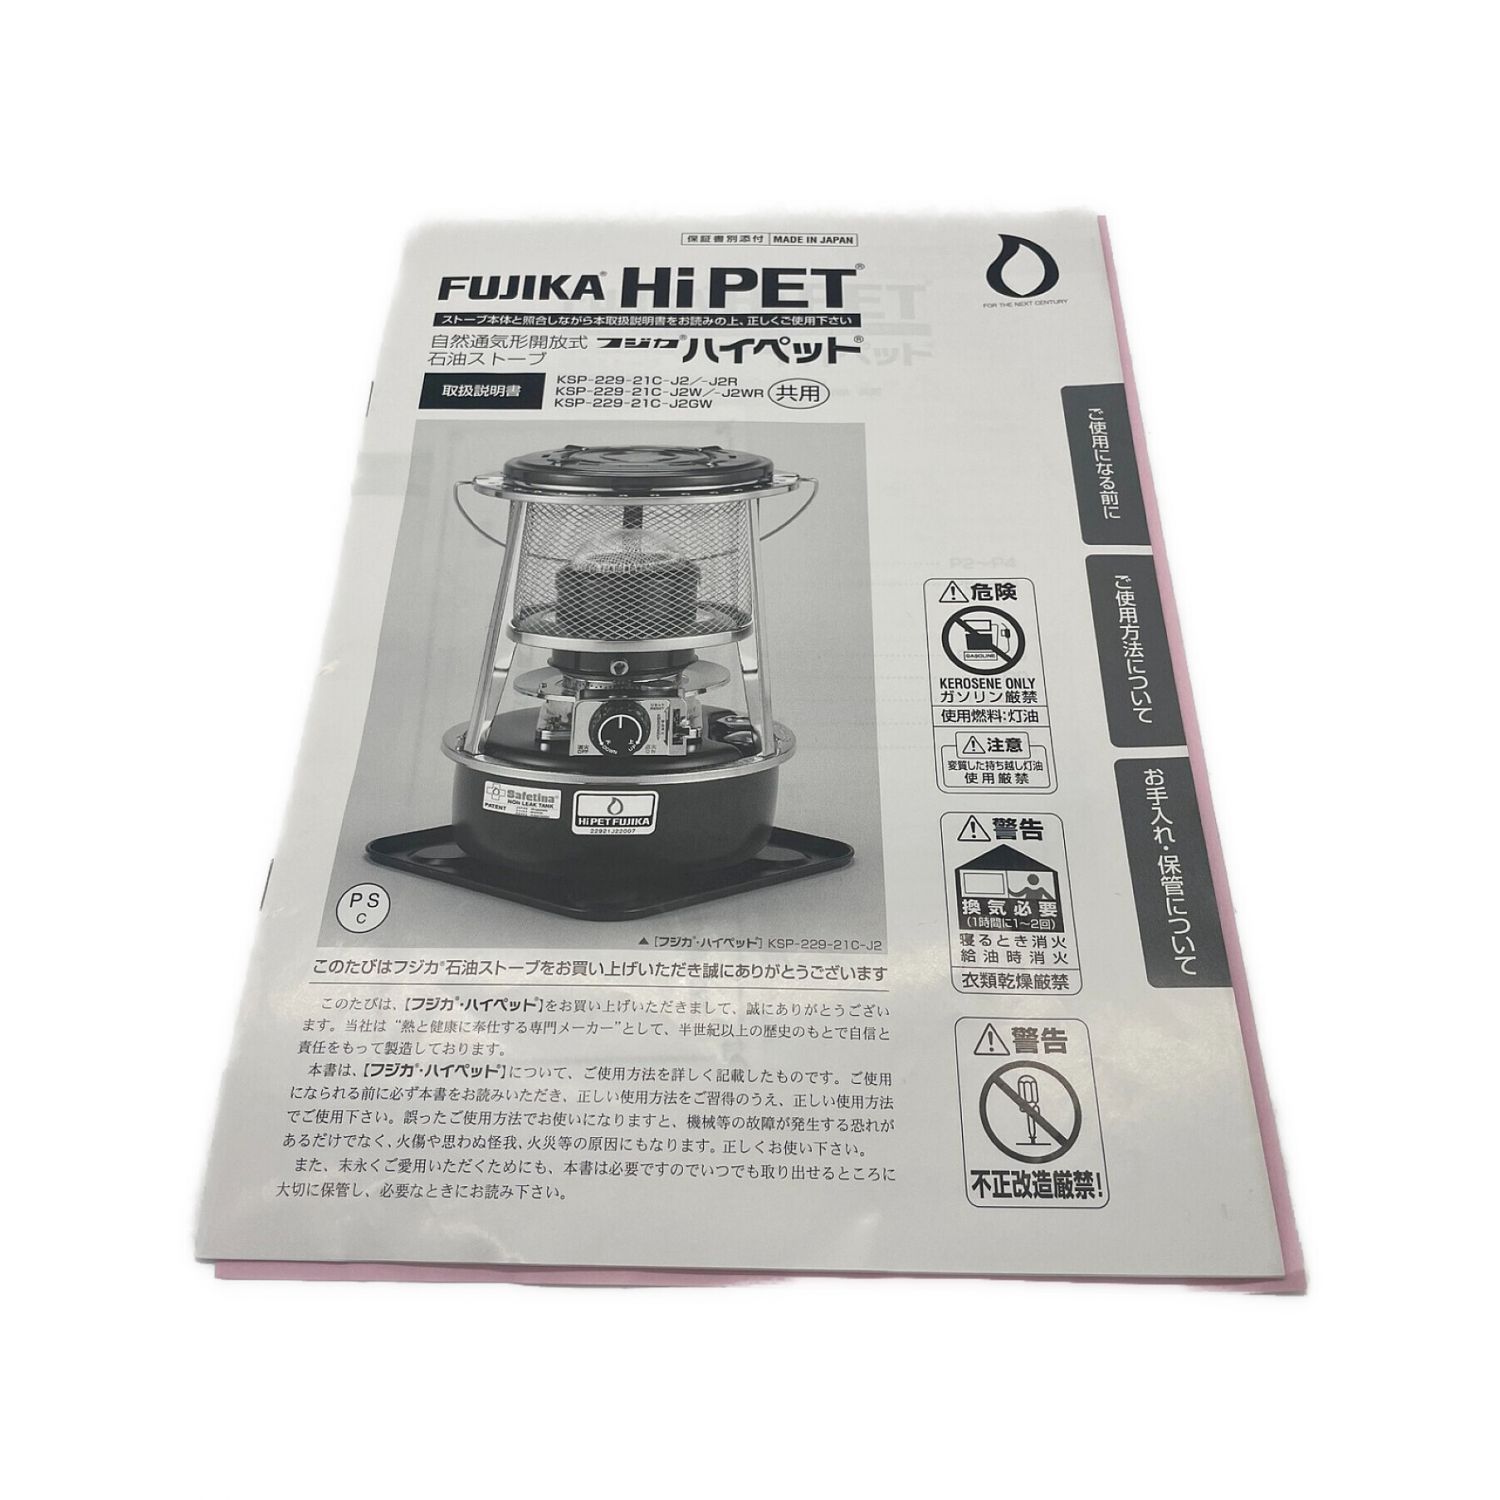 FUJIKA HIPET (フジカハイペット) 自然通気型開放式石油ストーブ KSP